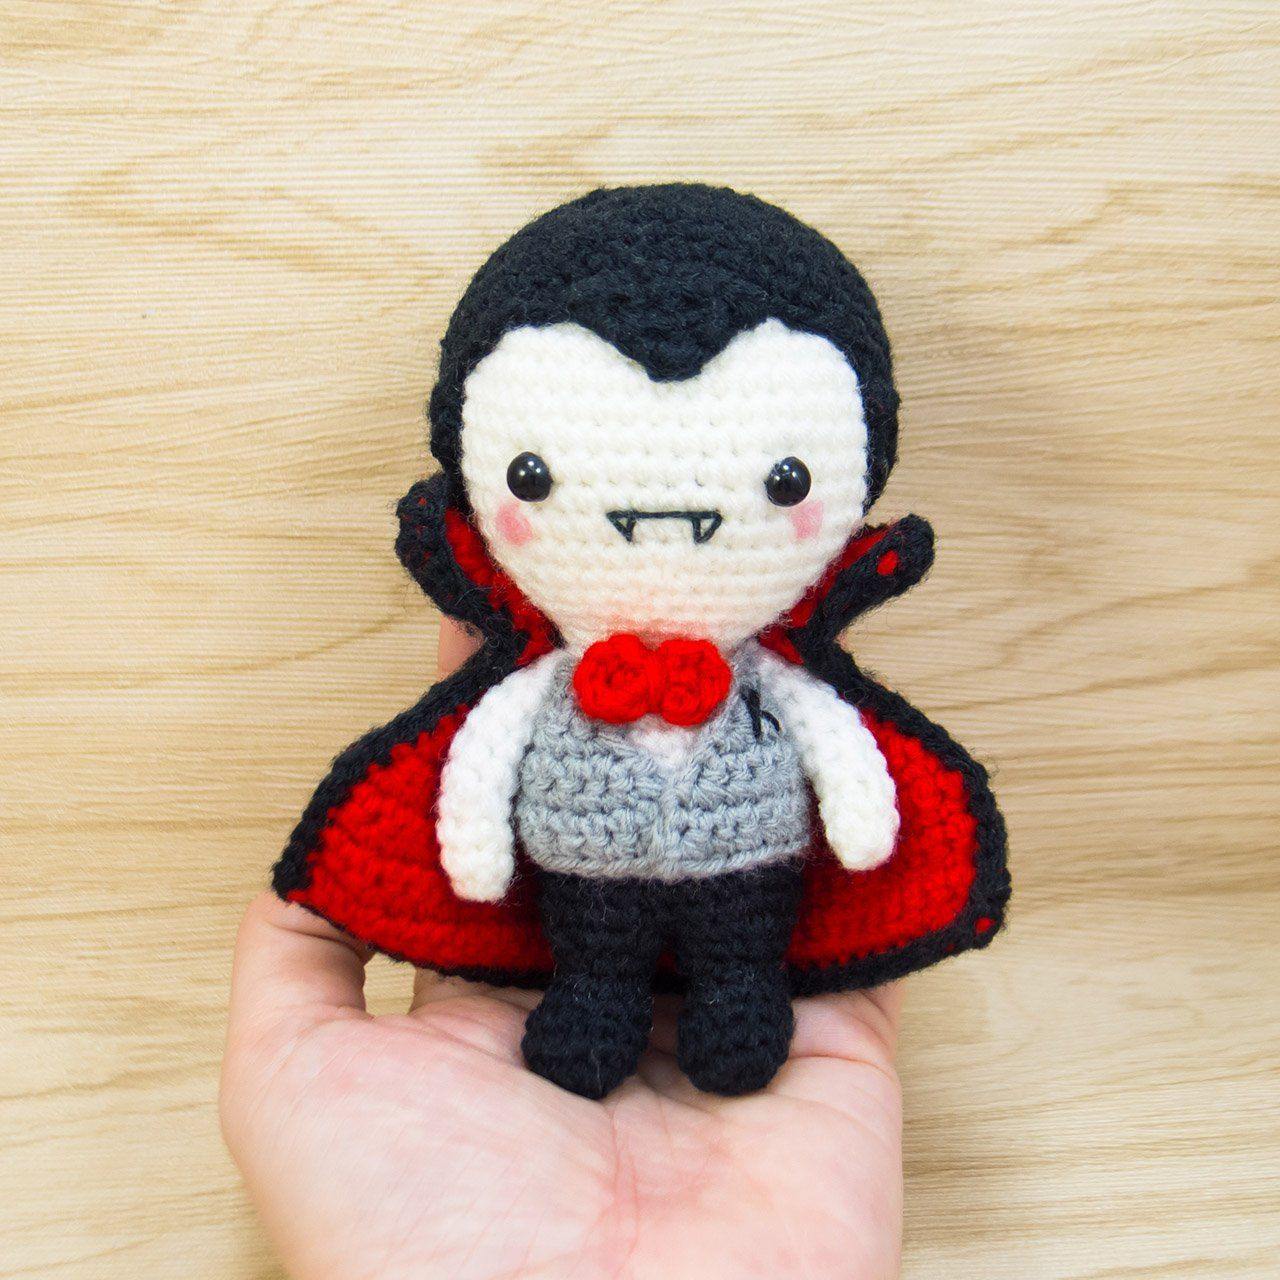 Crochet vampire plush for halloween decor